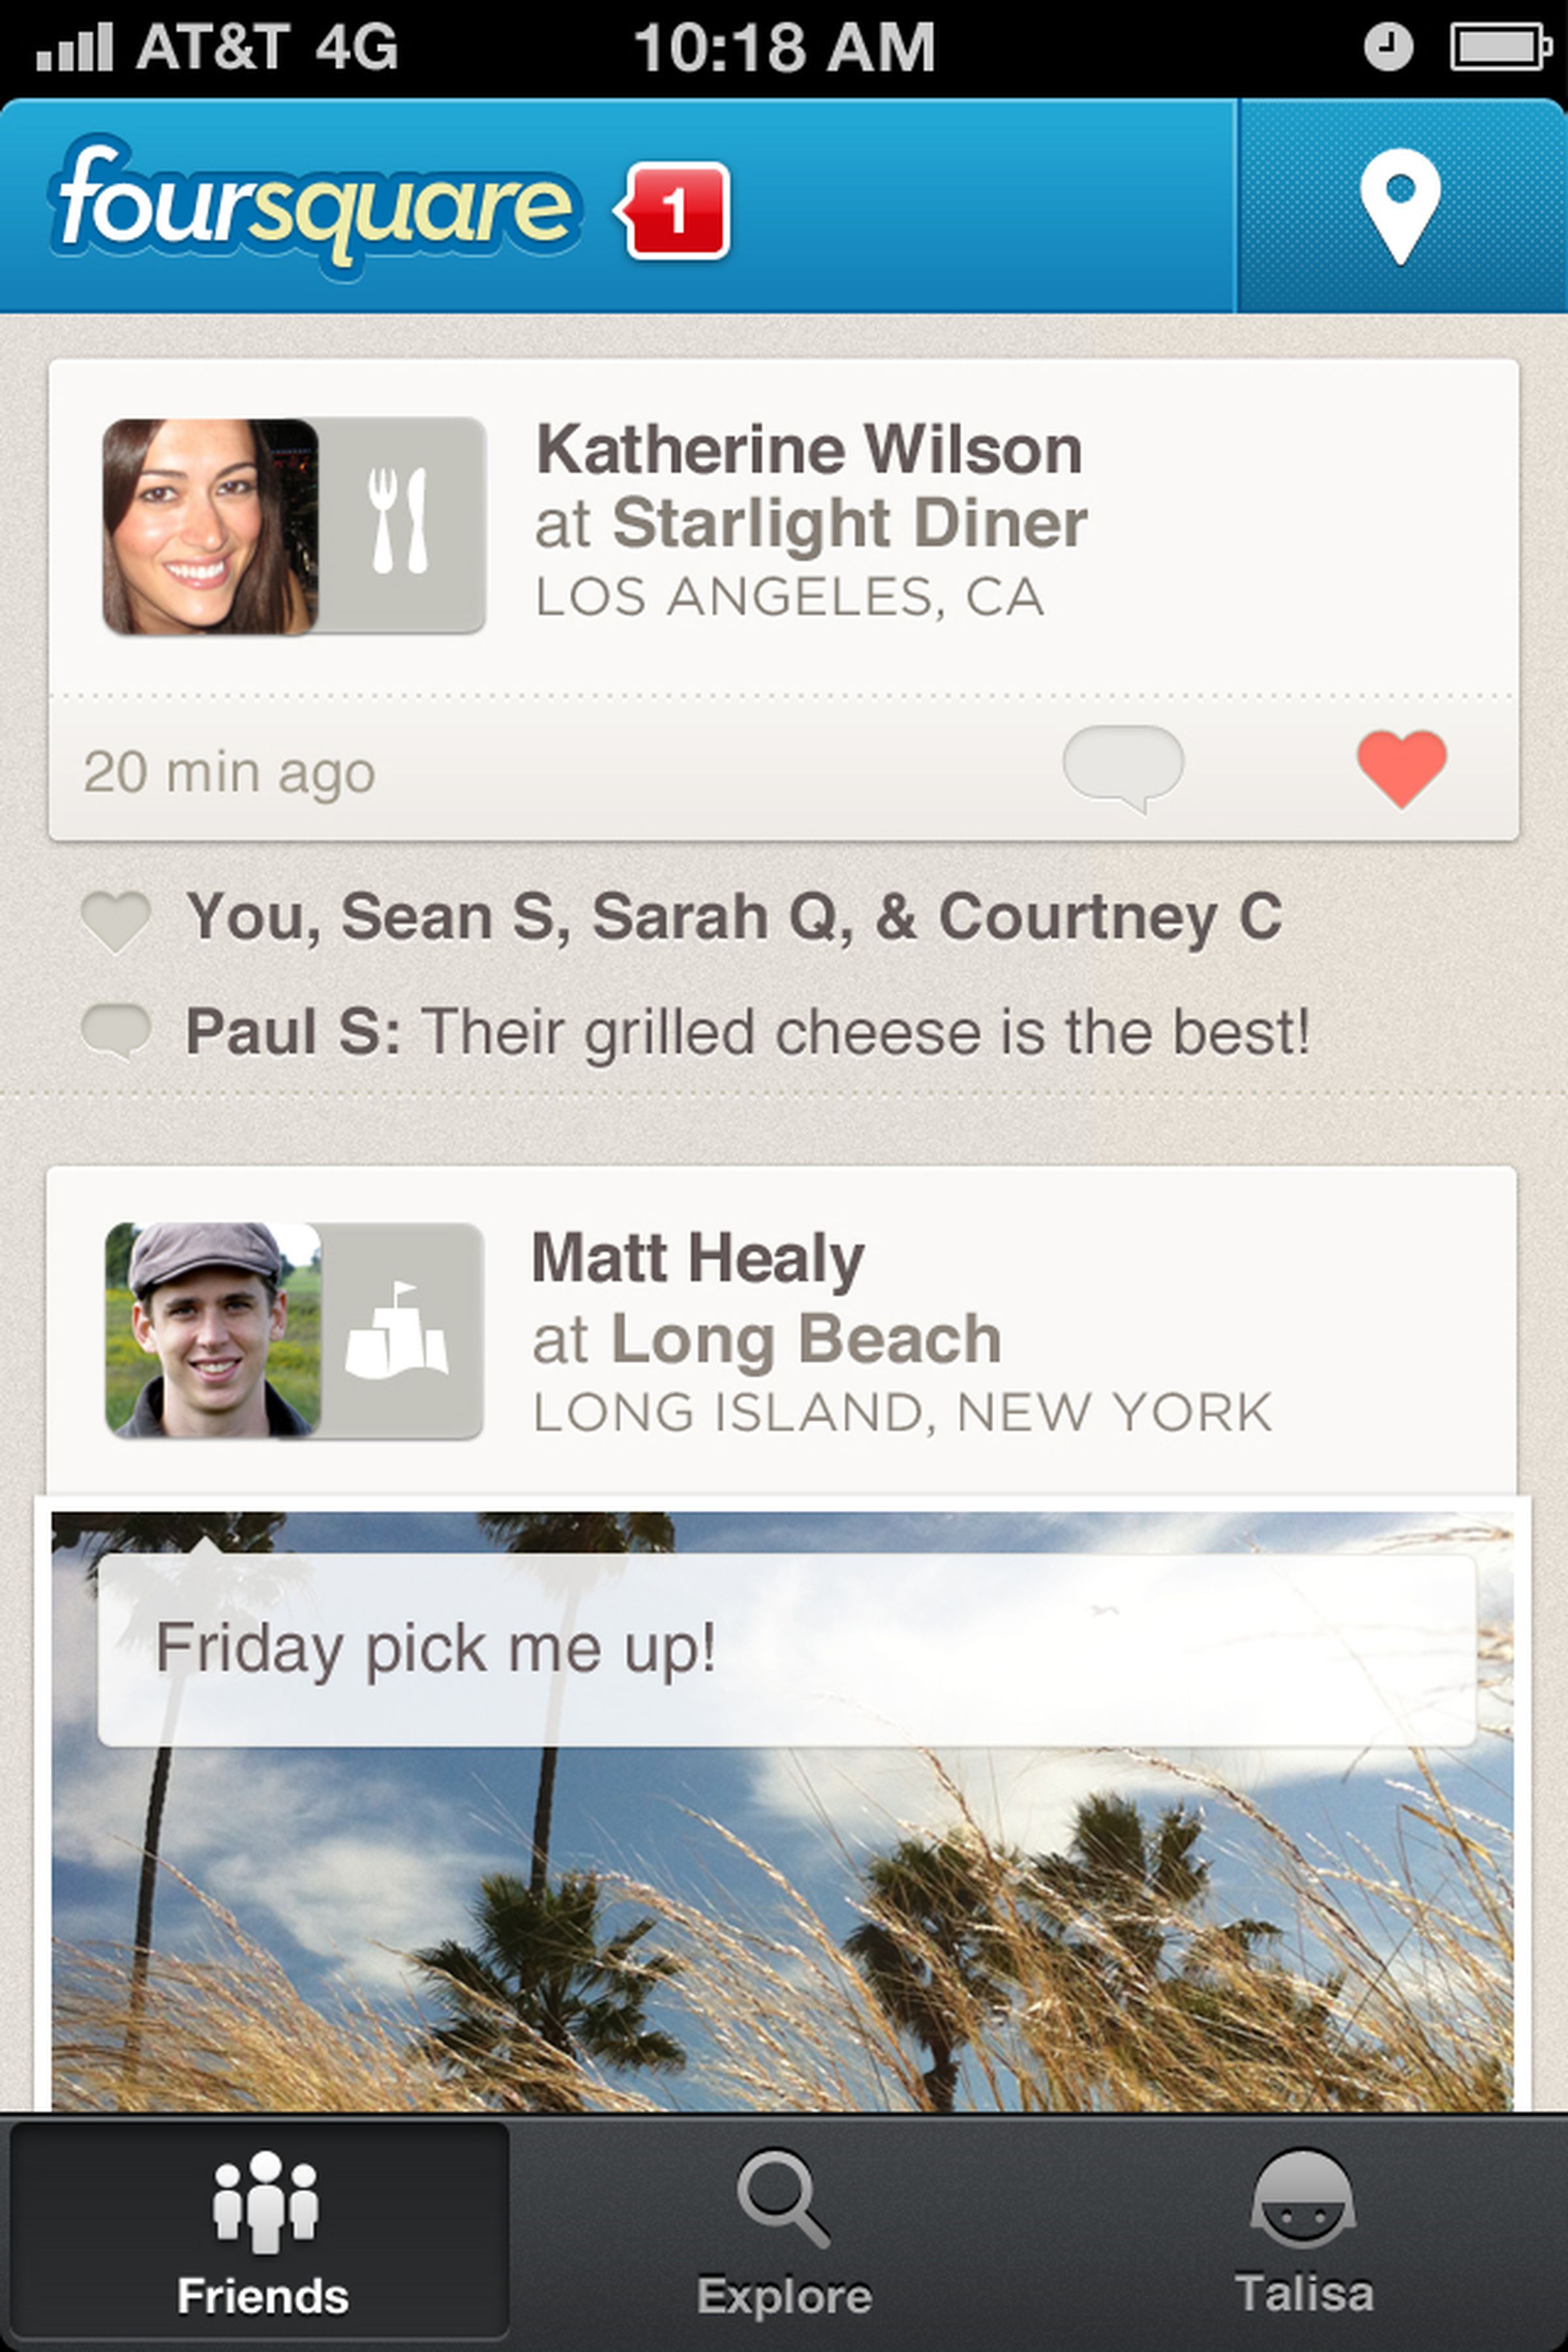 All-new Foursquare screenshots